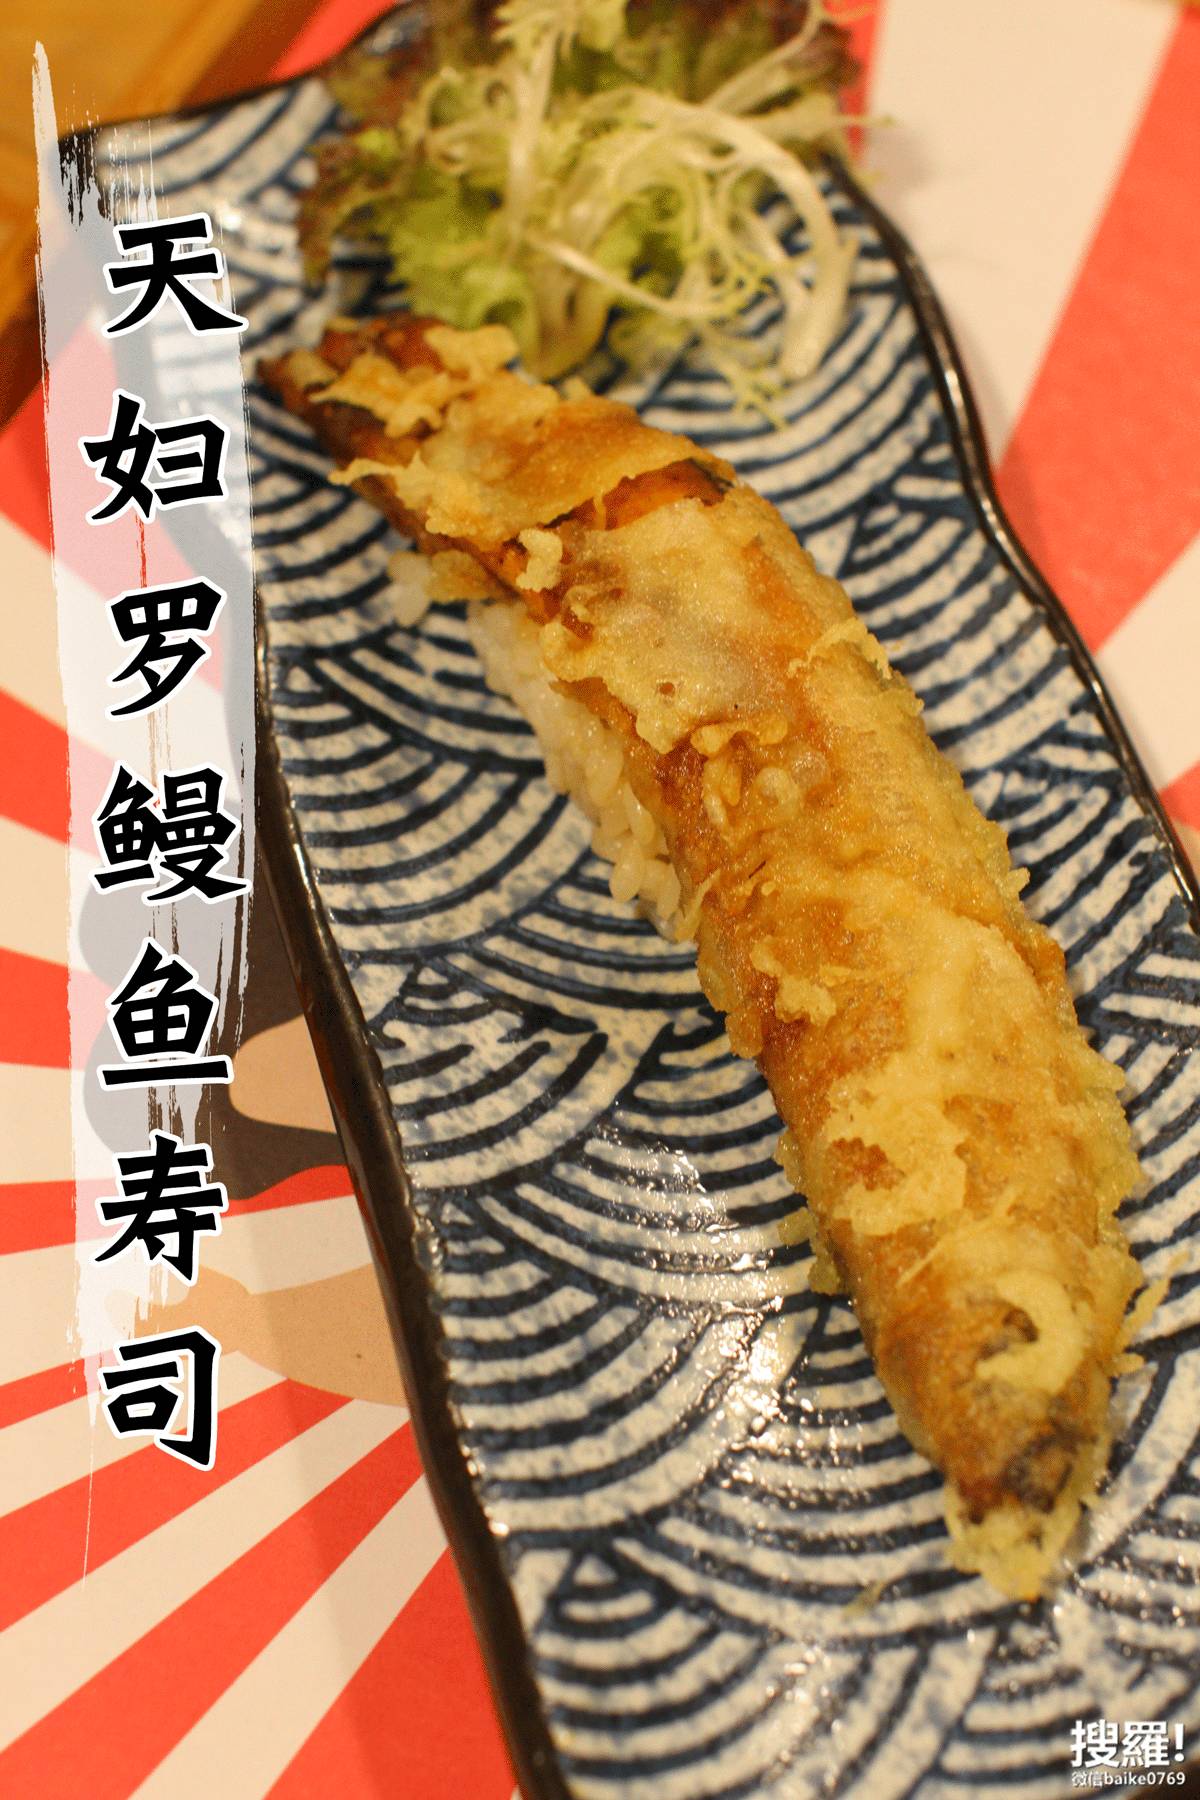 这个天妇罗鳗鱼寿司上的鳗鱼比一部6p还要长,女生一般都很满意这个